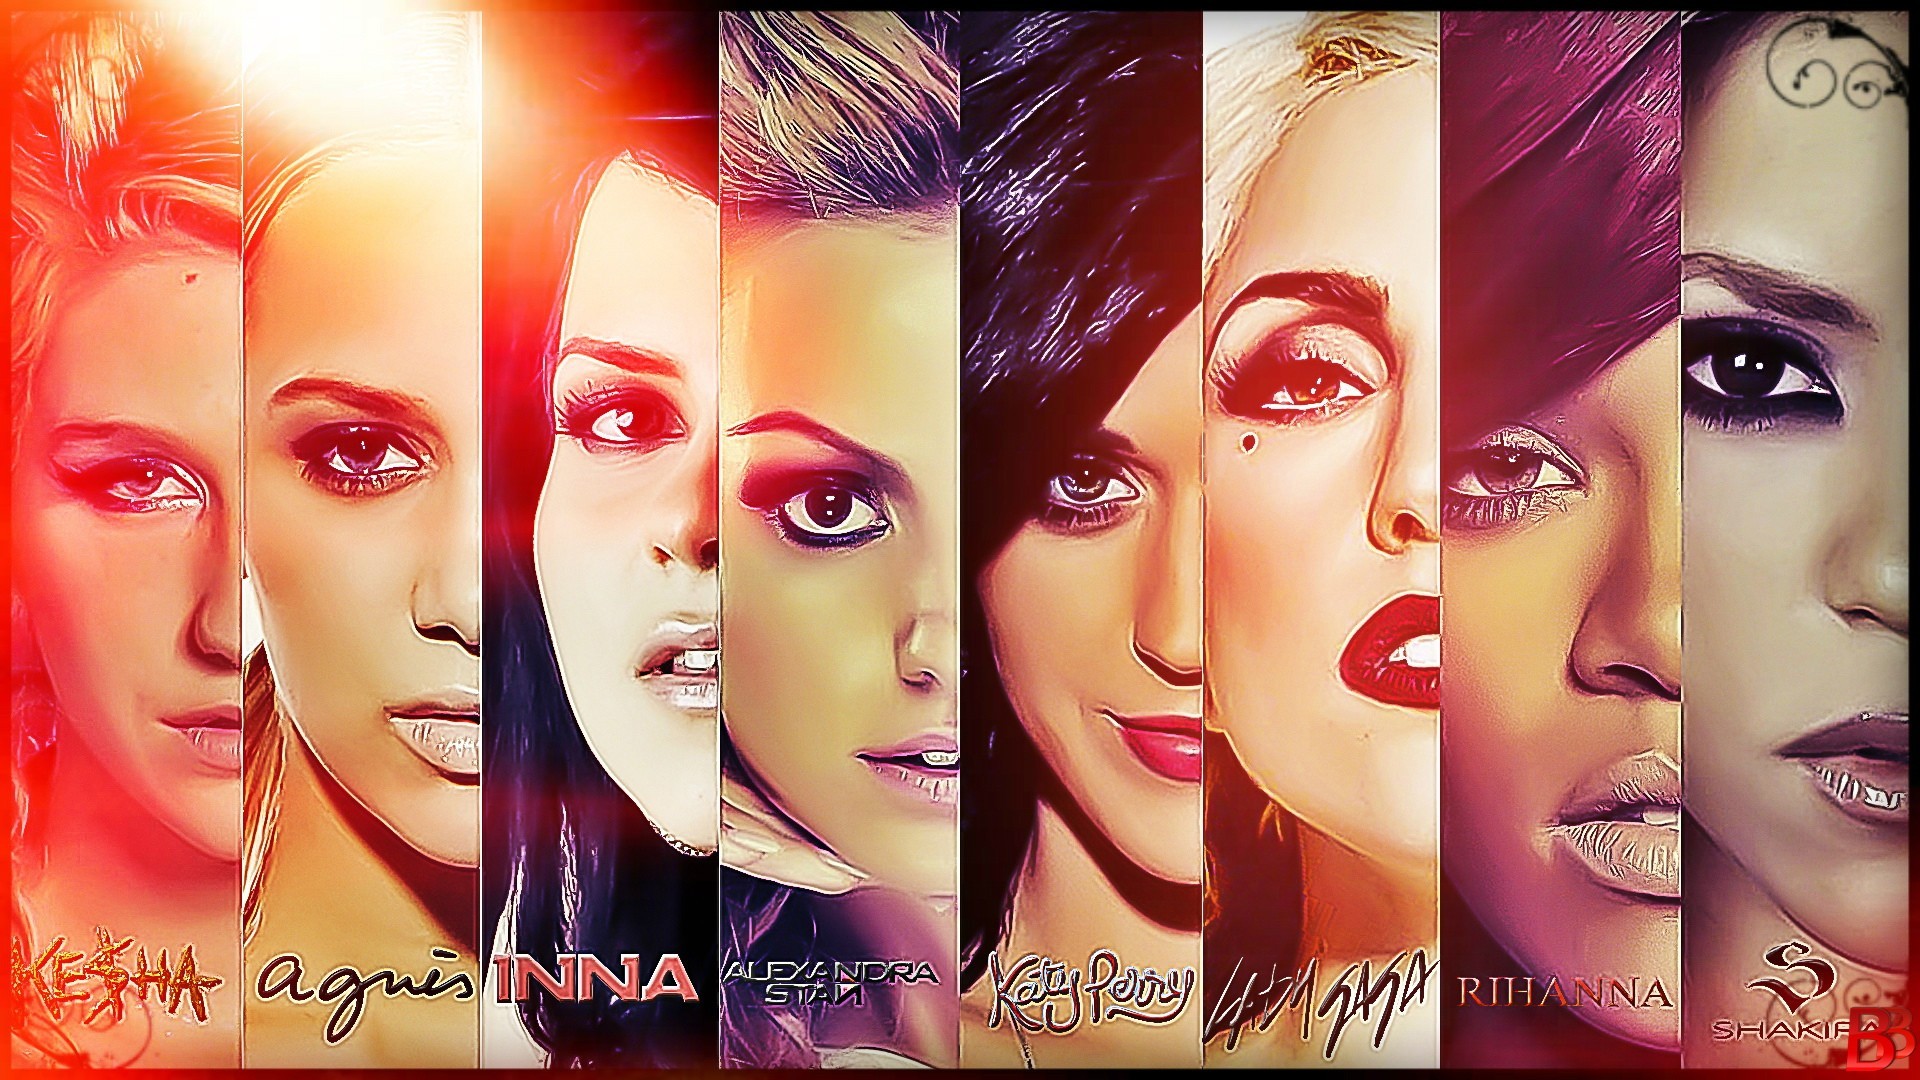 Inna, Katy Perry, Lady Gaga, Rihanna, Shakira, Alexandra Stan, Kesha Wallpaper